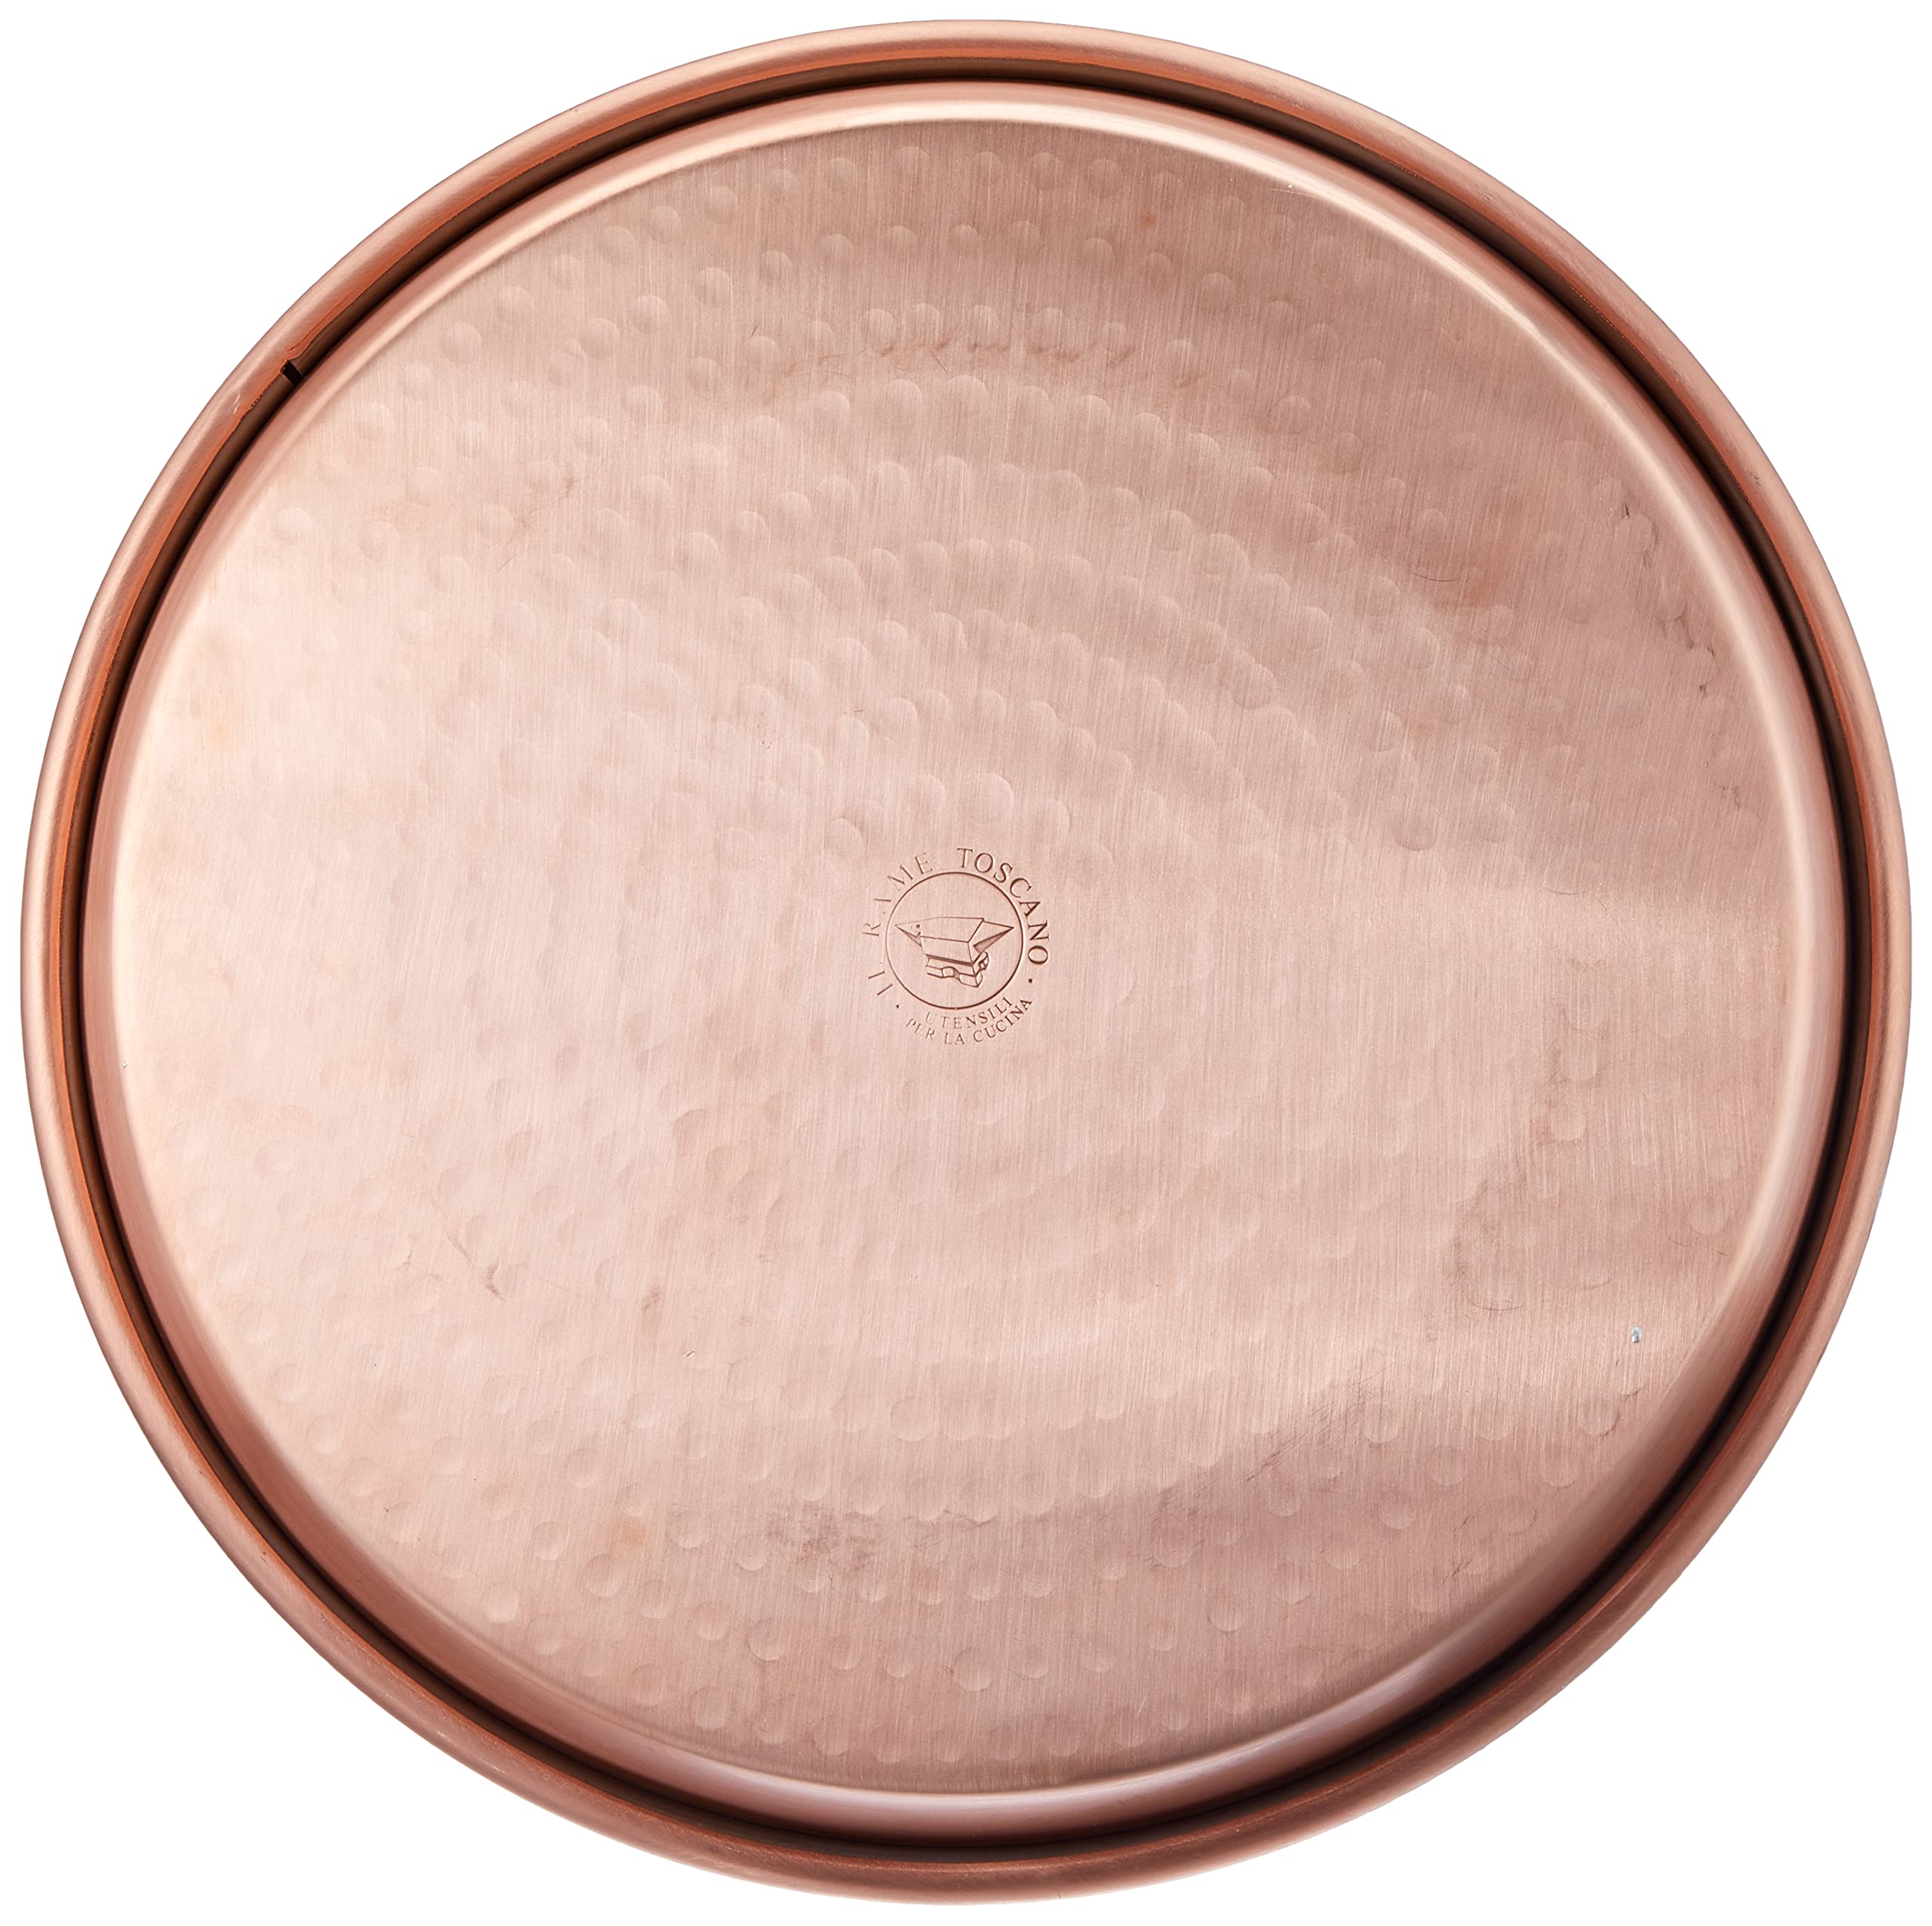 Vigor Blinky 94080 – 36 Round Baking Tinned Copper, 3 cm Edge, Diameter 36 cm